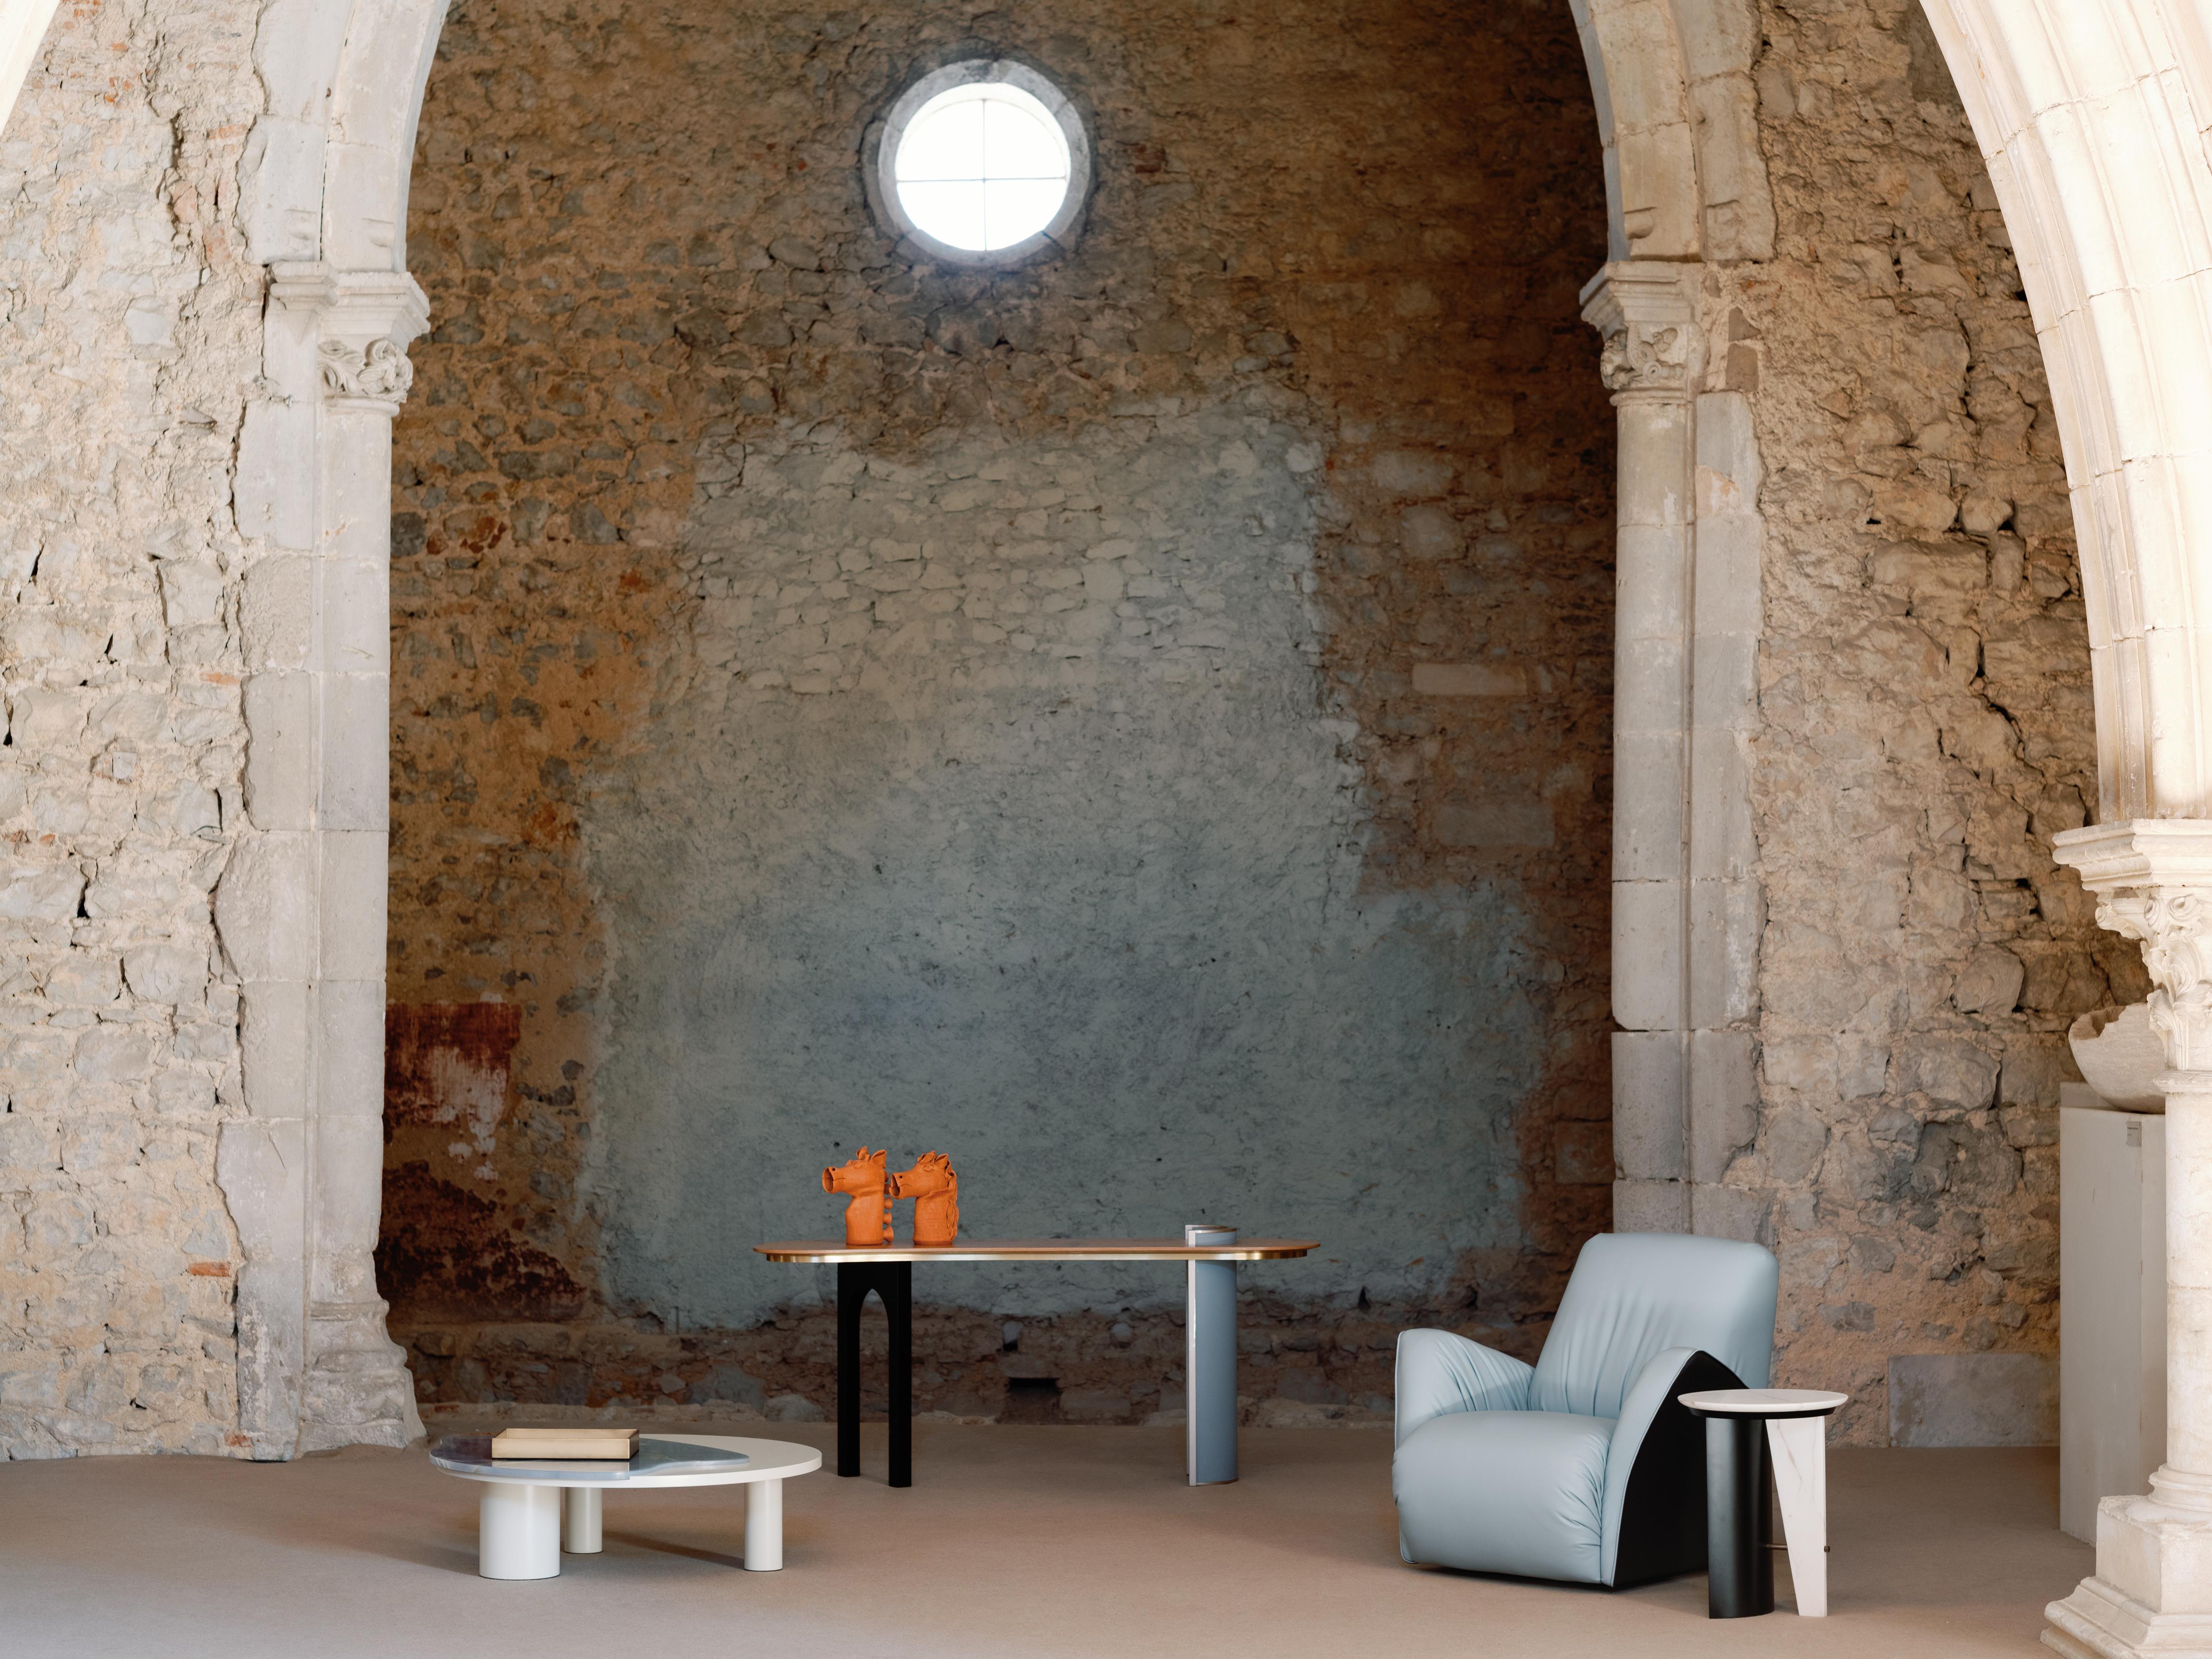 Caramulo Drehsessel, Modern Collection, handgefertigt in Portugal - Europa von GF Modern.

Erleben Sie den Inbegriff von unvergleichlichem Komfort und unvergleichlicher Eleganz mit dem Sessel Caramulo, der sorgfältig entworfen wurde, um die Kunst